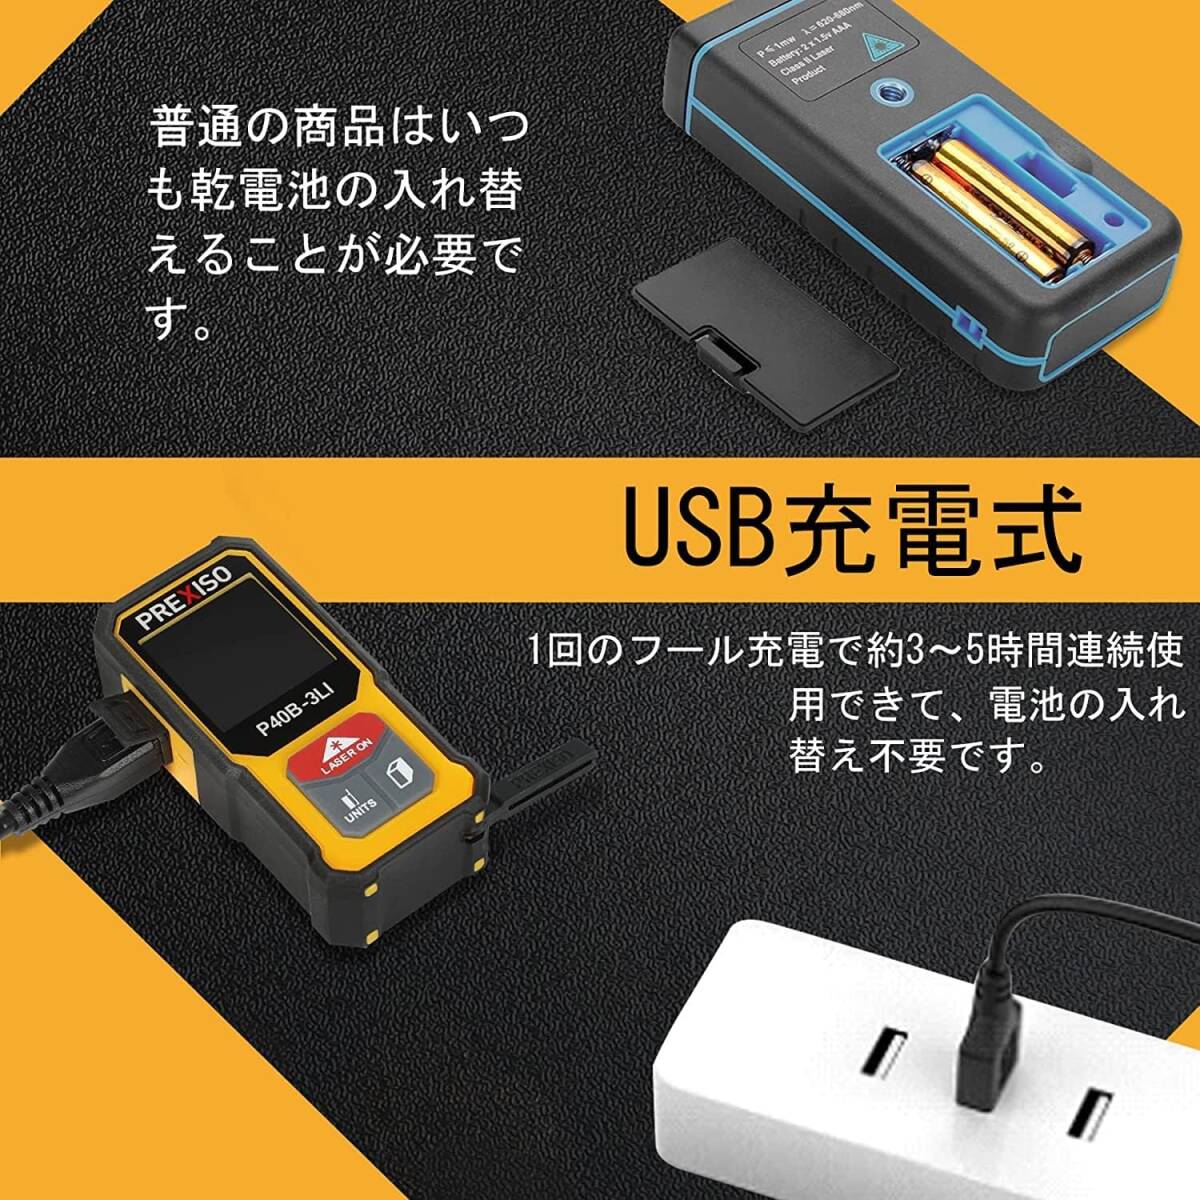 トレンド コンパクト高精度レーザー距離計 40M PSC認定 USB充電式 6種